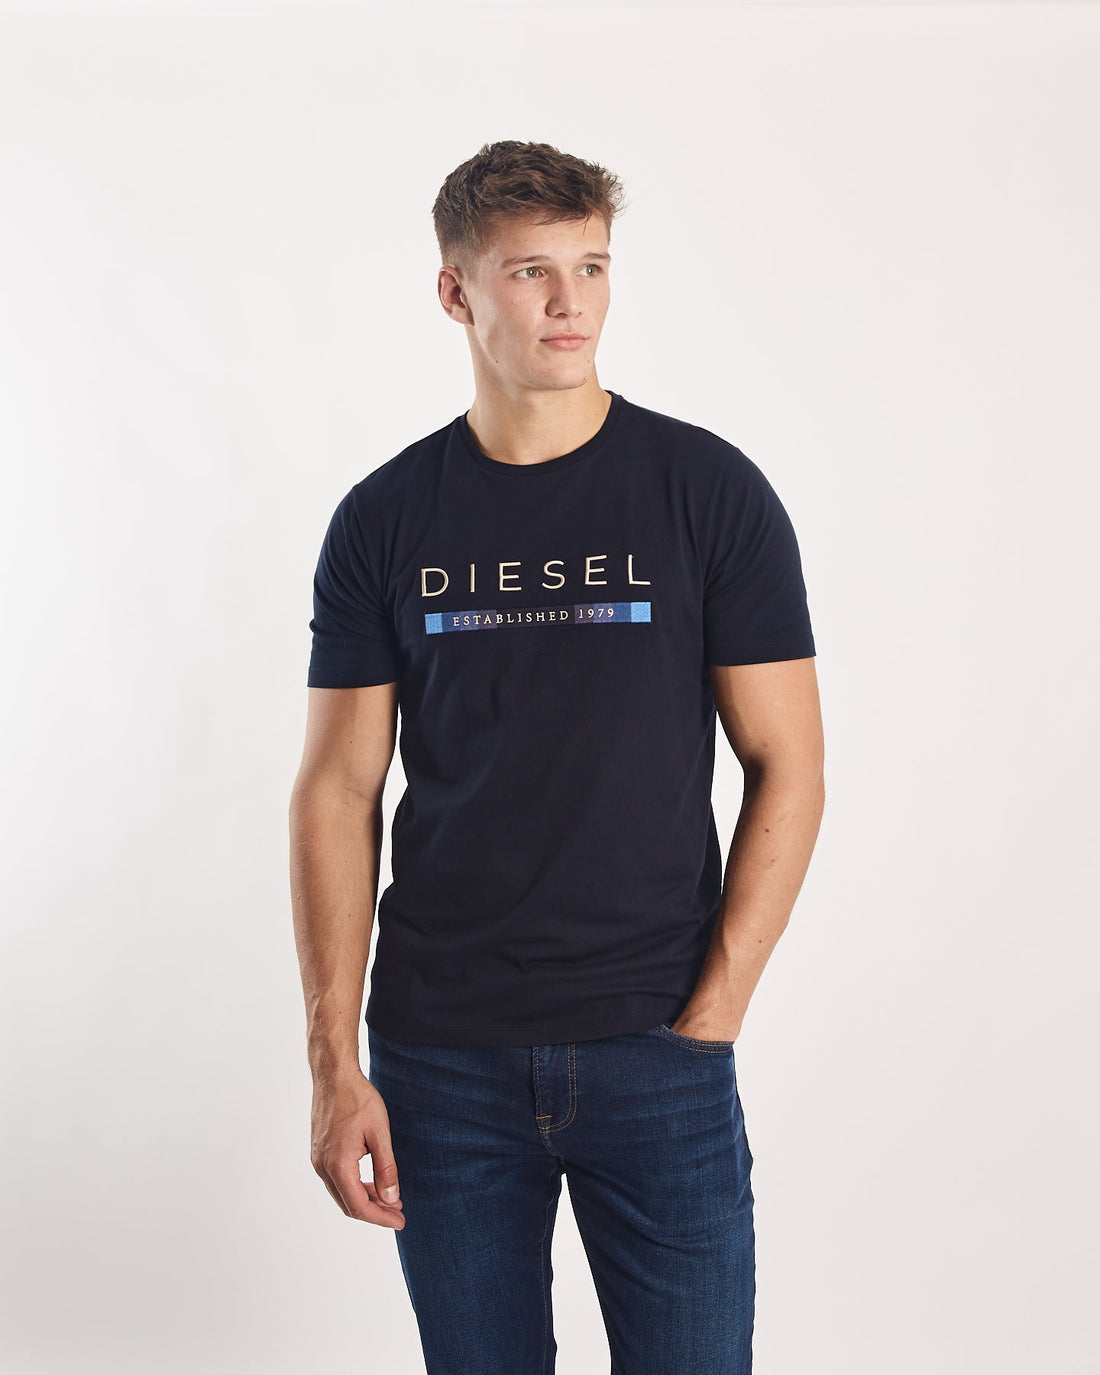 Diesel Uziel T-Shirt - Teal/Wine/Navy